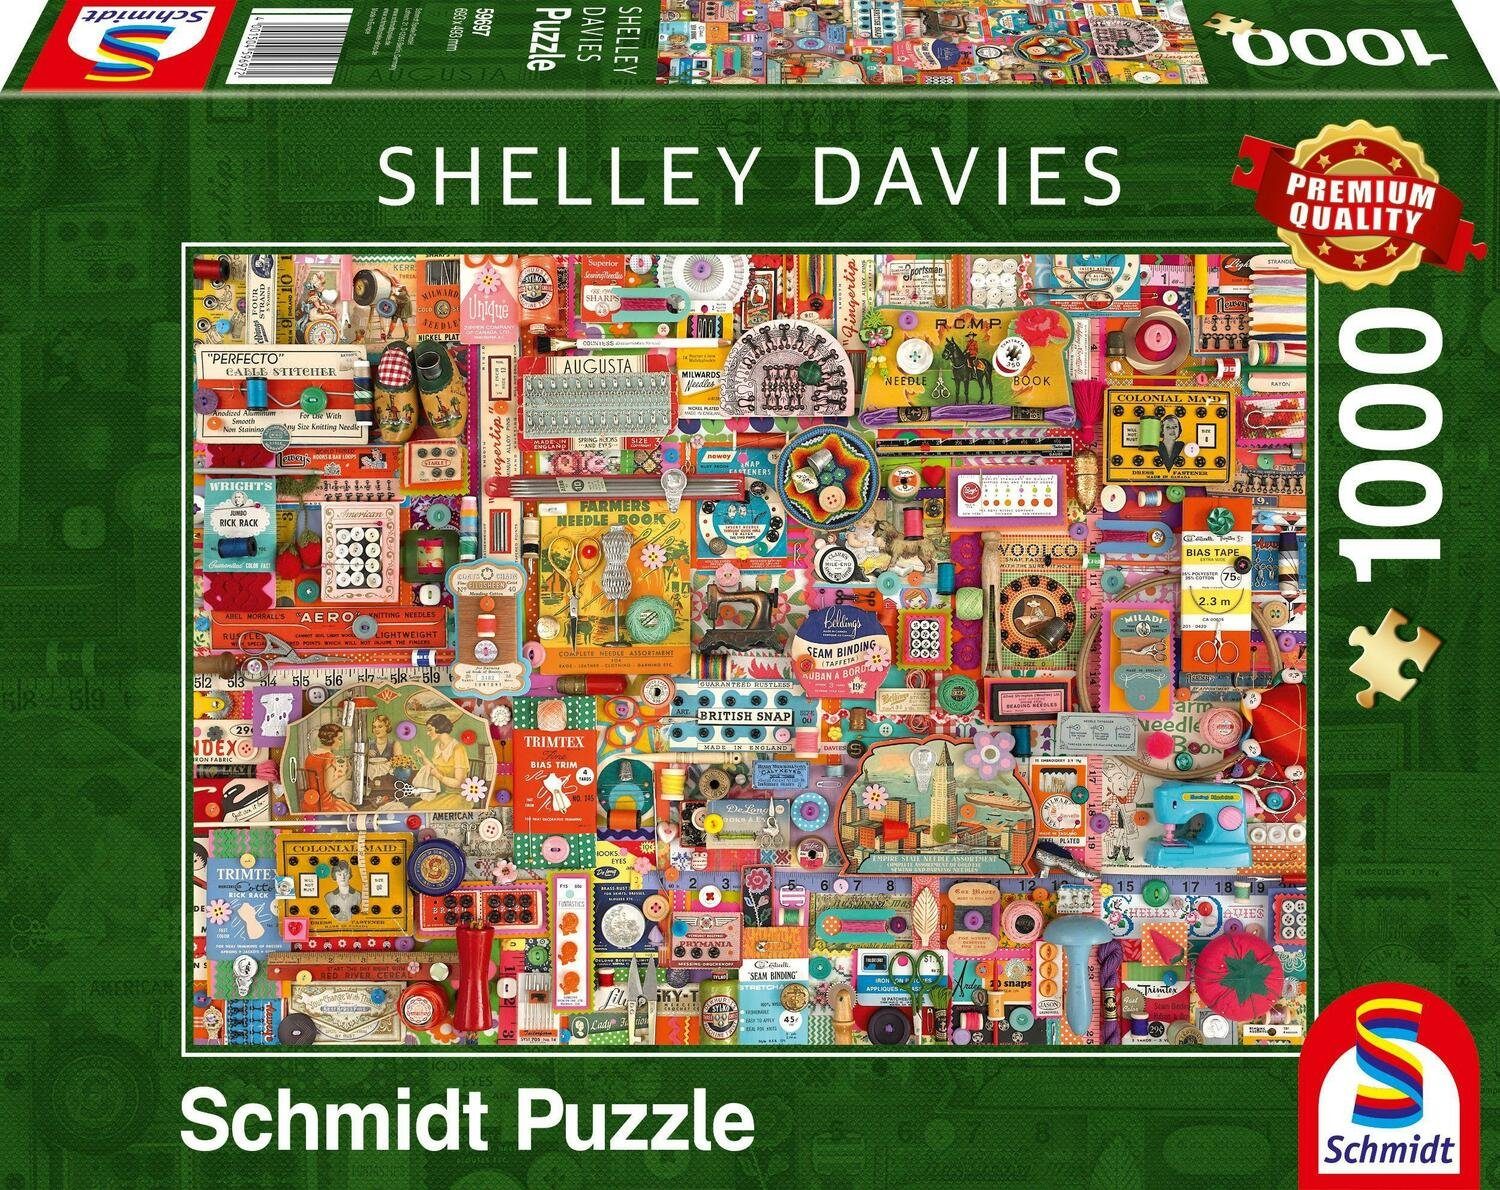 Schmidt Spiele Puzzle Vintage Handarbeitszeug Puzzle 1.000 Teile, 1000 Puzzleteile